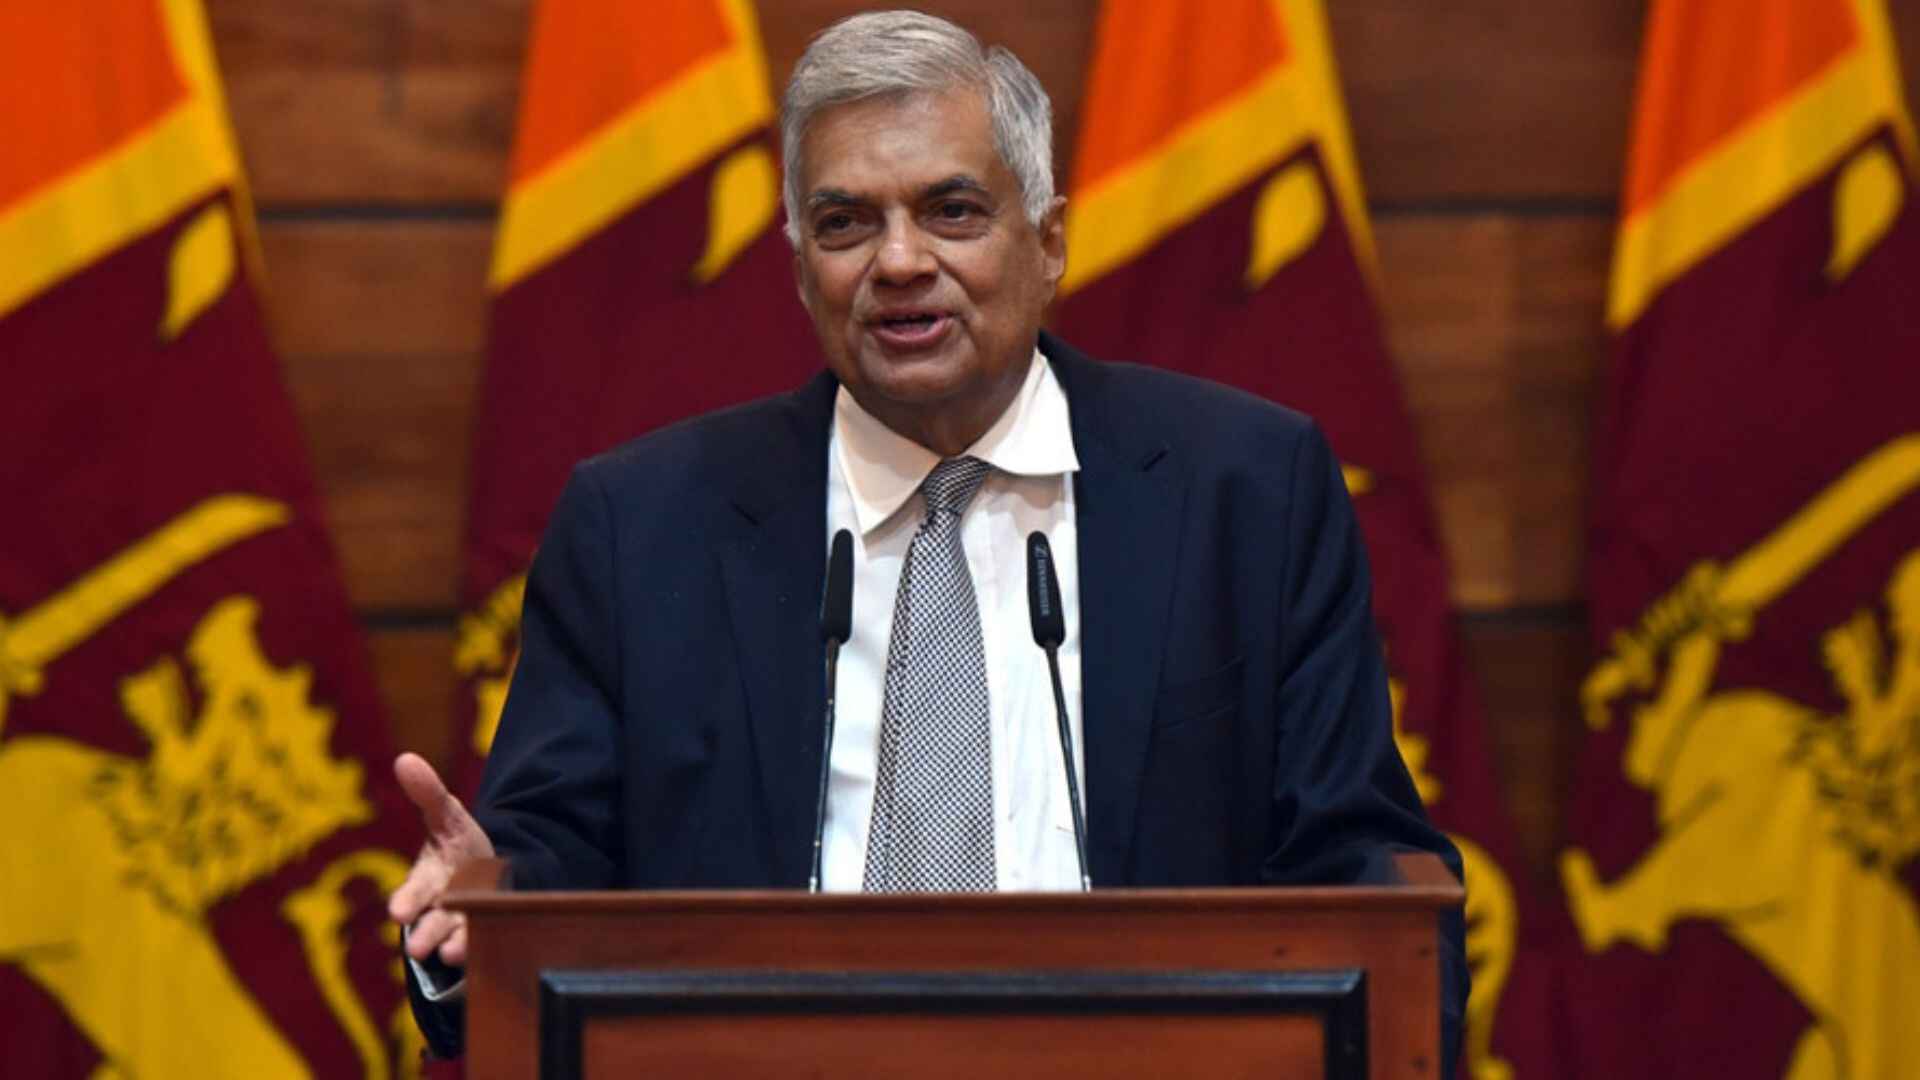 PM Modi Extends Invitation To Sri Lankan President Wickremesinghe For Swearing-In Ceremony